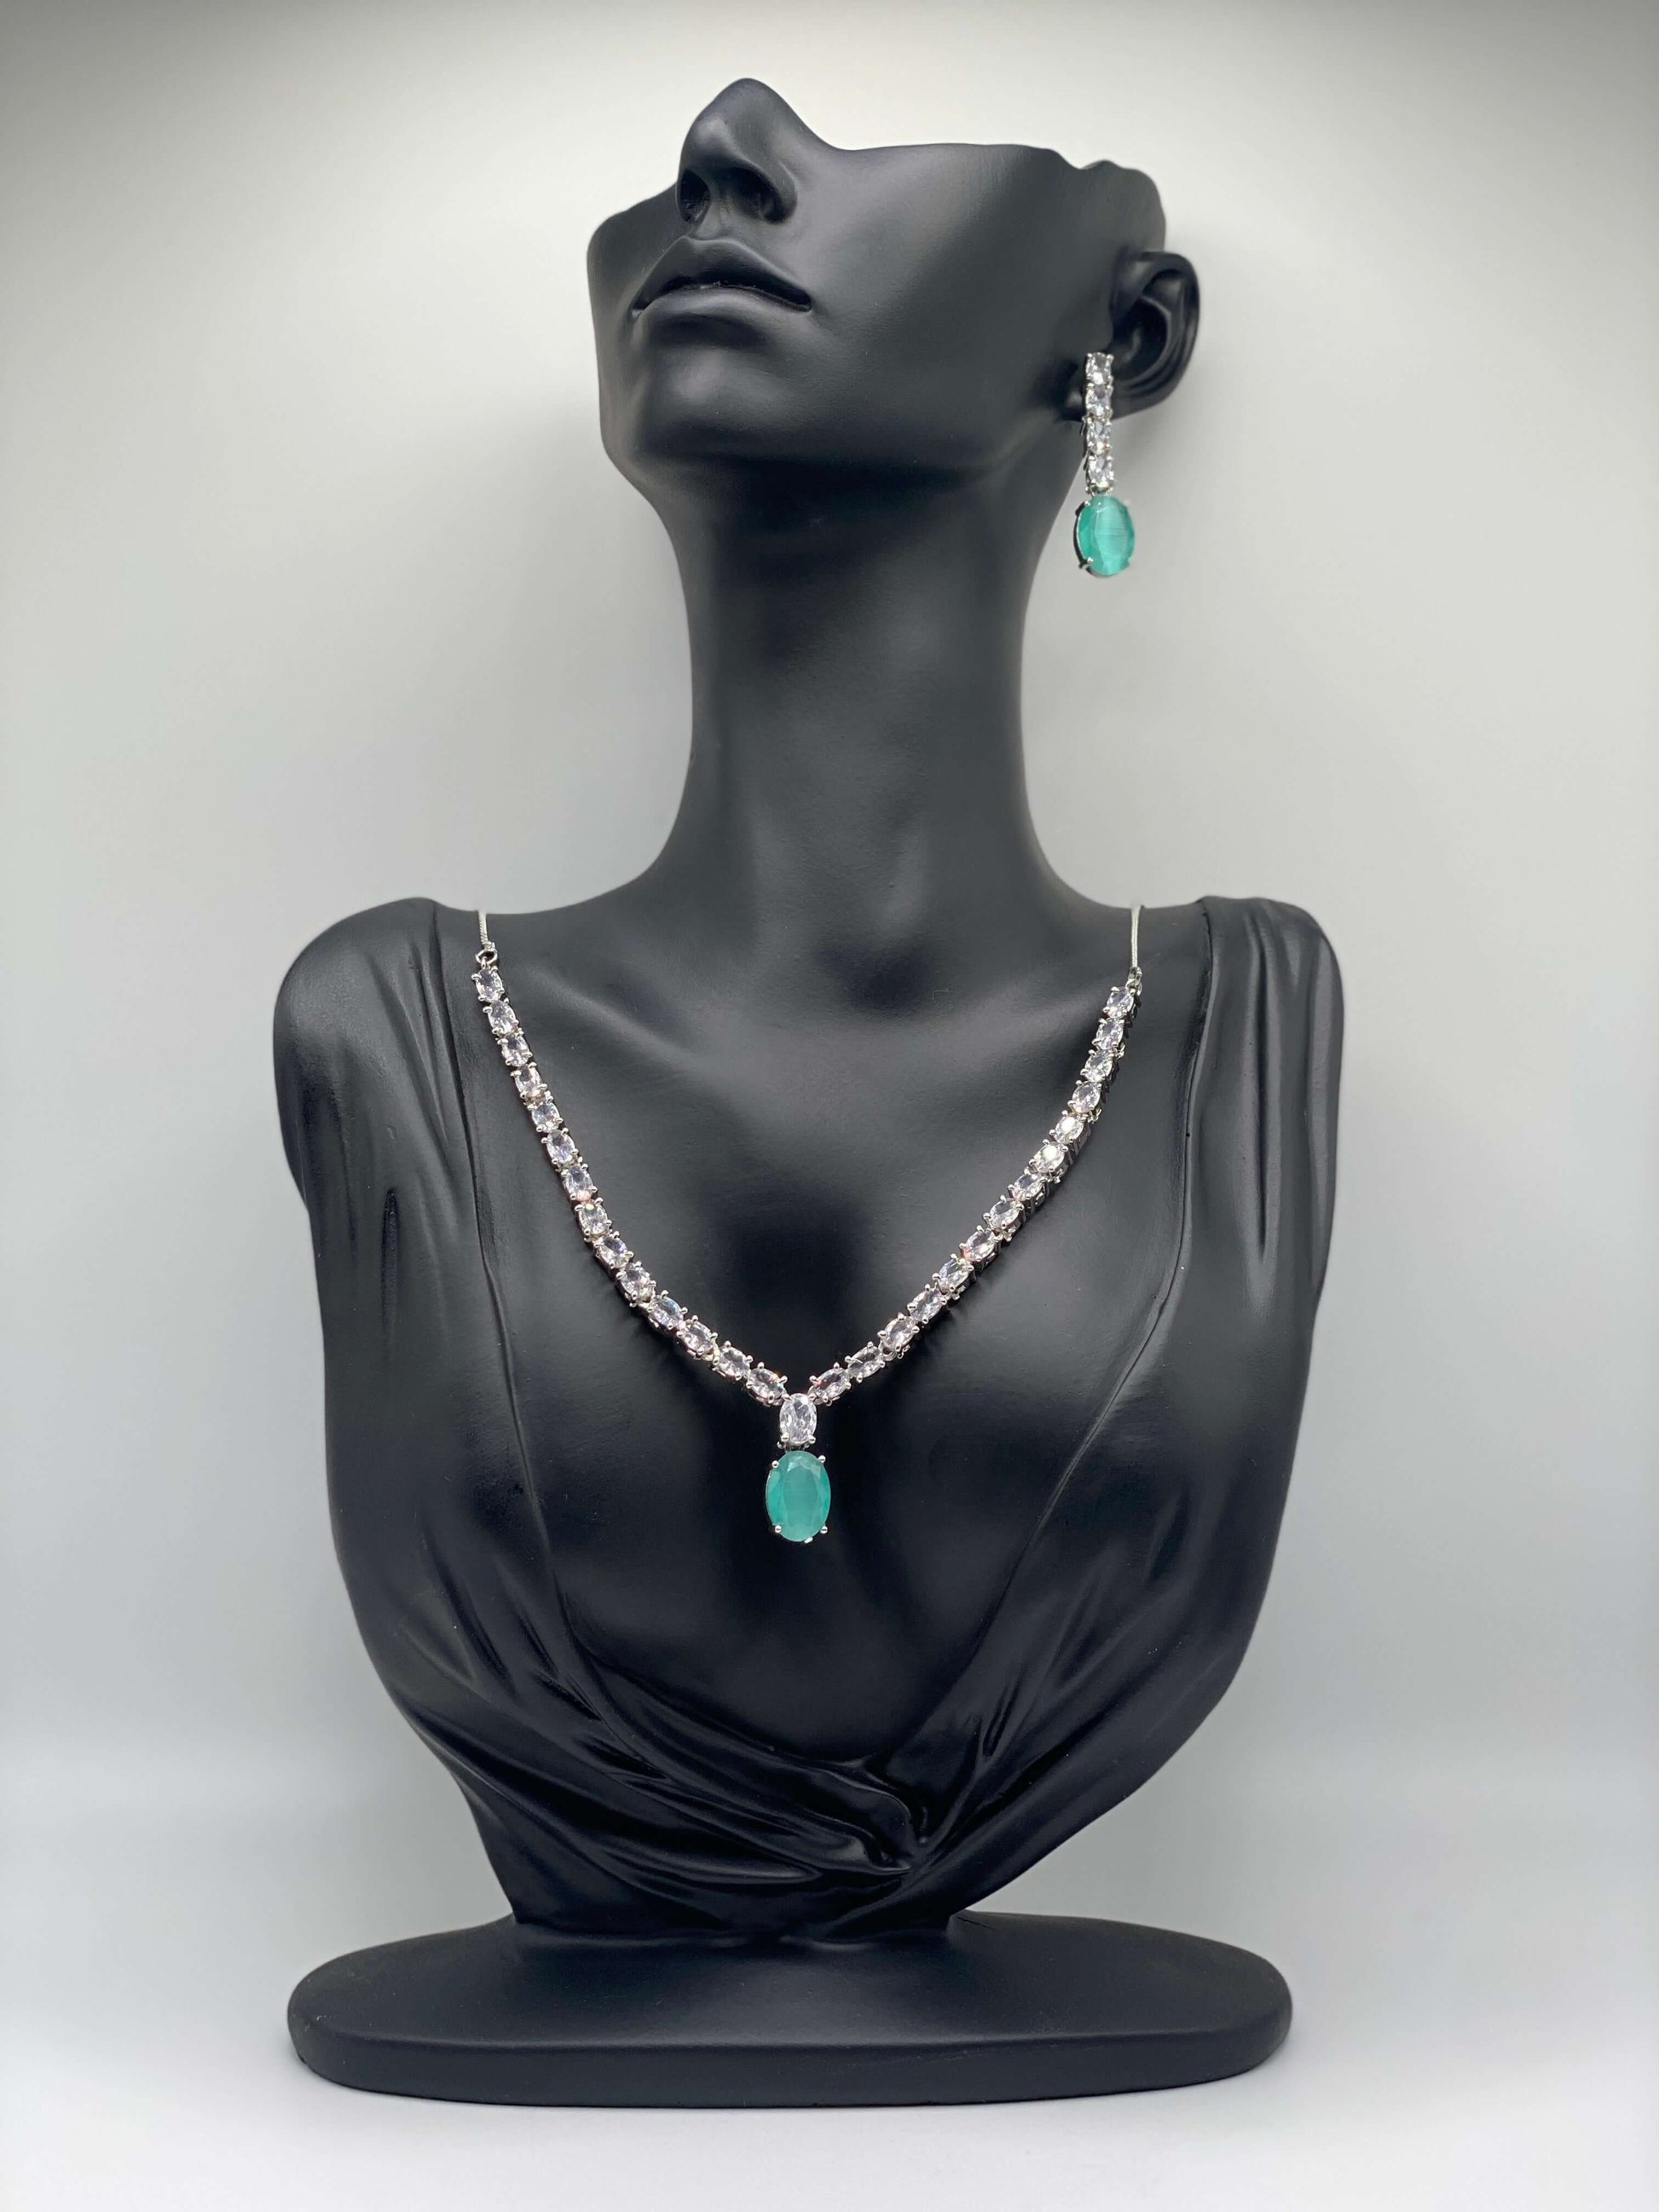 Necklace & Earrings. PureJoy Jewelry